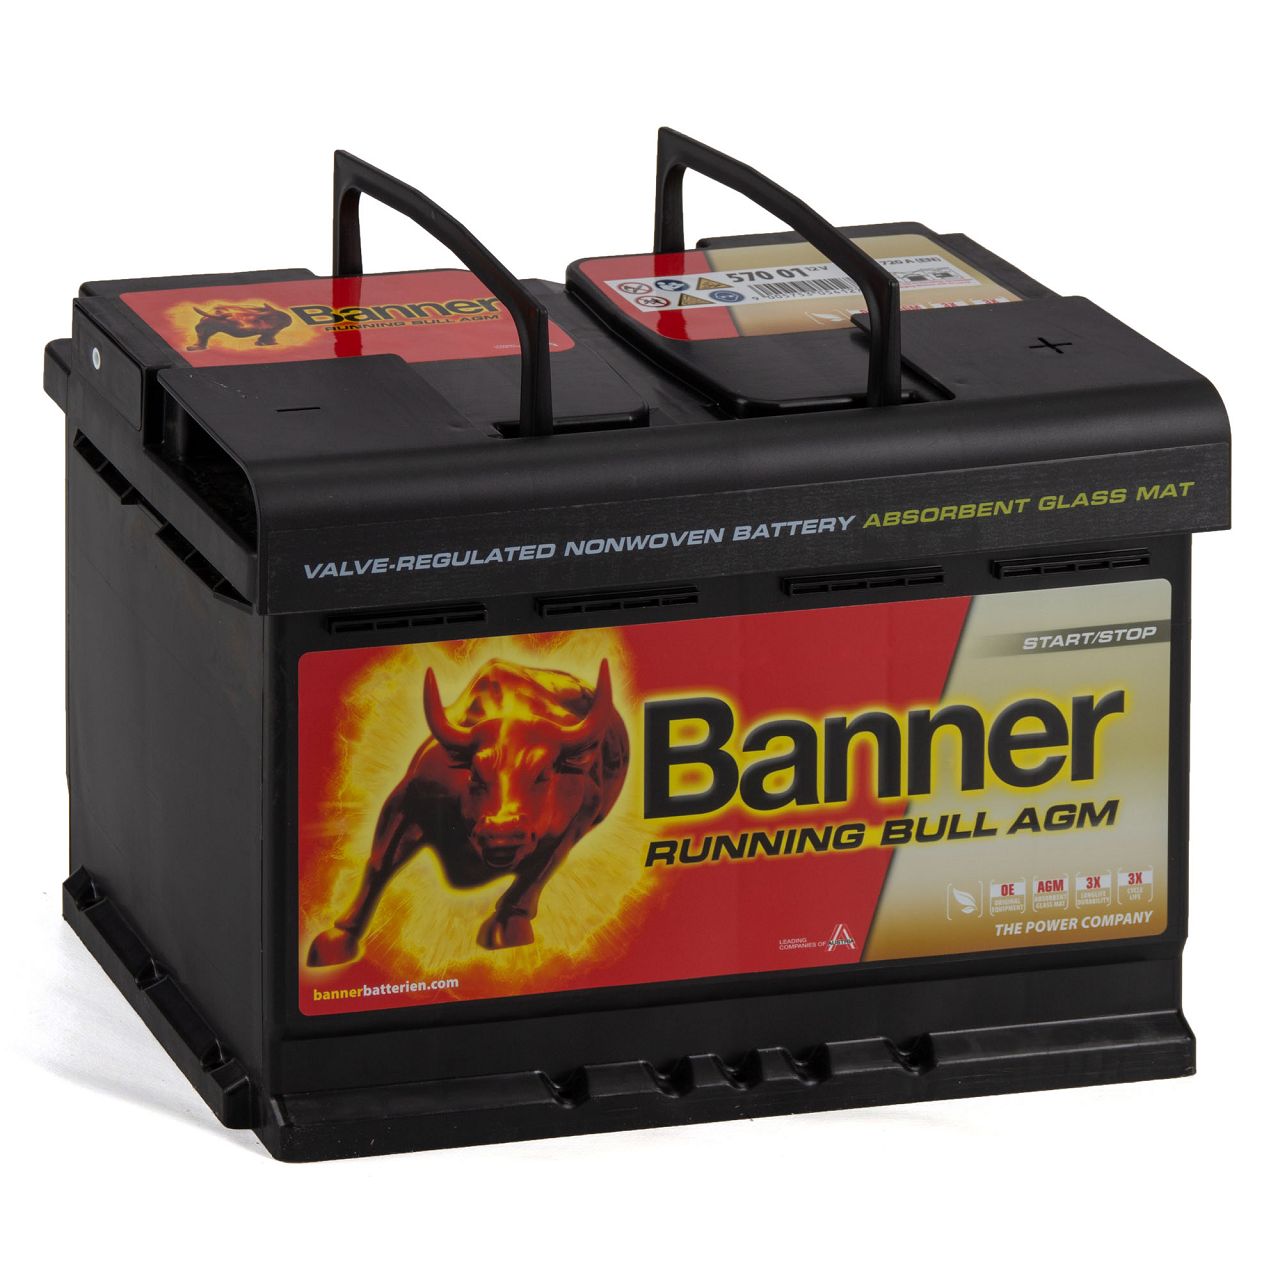 BANNER 57001 096AGMOE Running Bull AGM Autobatterie Batterie 12V 70Ah 720A